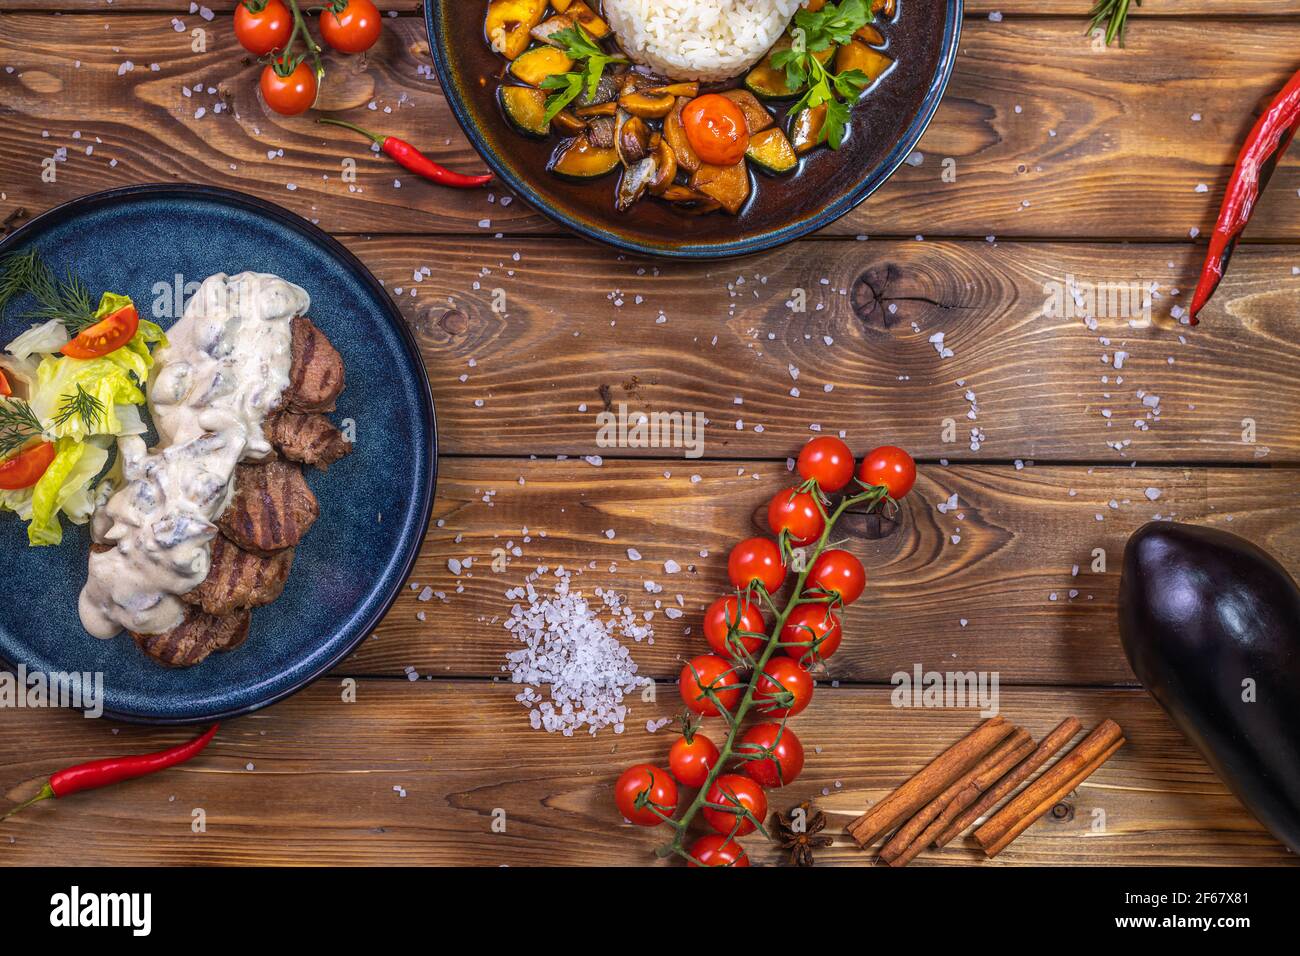 Polpettine di manzo su un piatto con verdure, verdure stufate con riso, lattuga, peperone, rosmarino, aglio e sesamo su fondo di legno marrone. Foto Stock